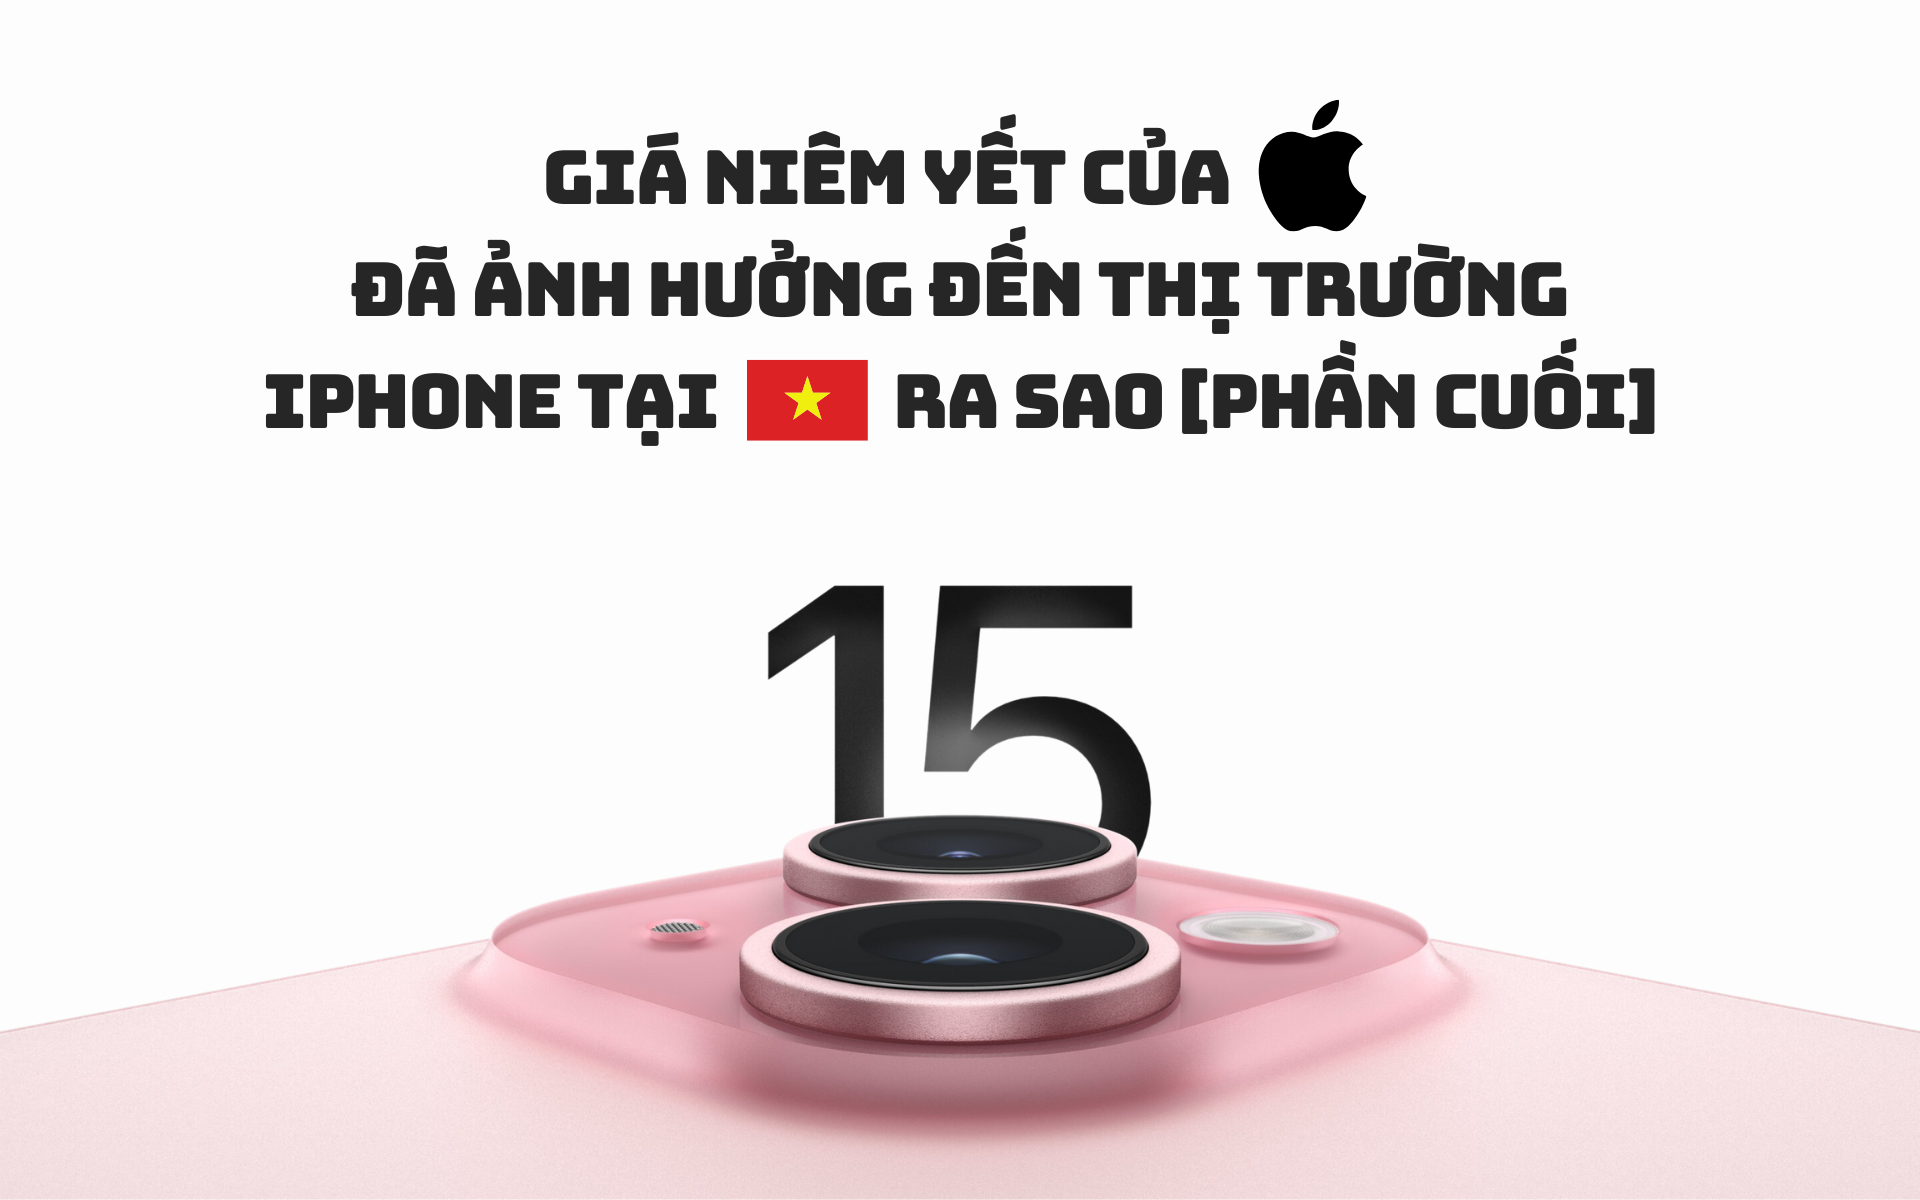 Giá niêm yết của Apple đã ảnh hưởng đến thị trường iPhone tại Việt Nam ra sao [Phần cuối]